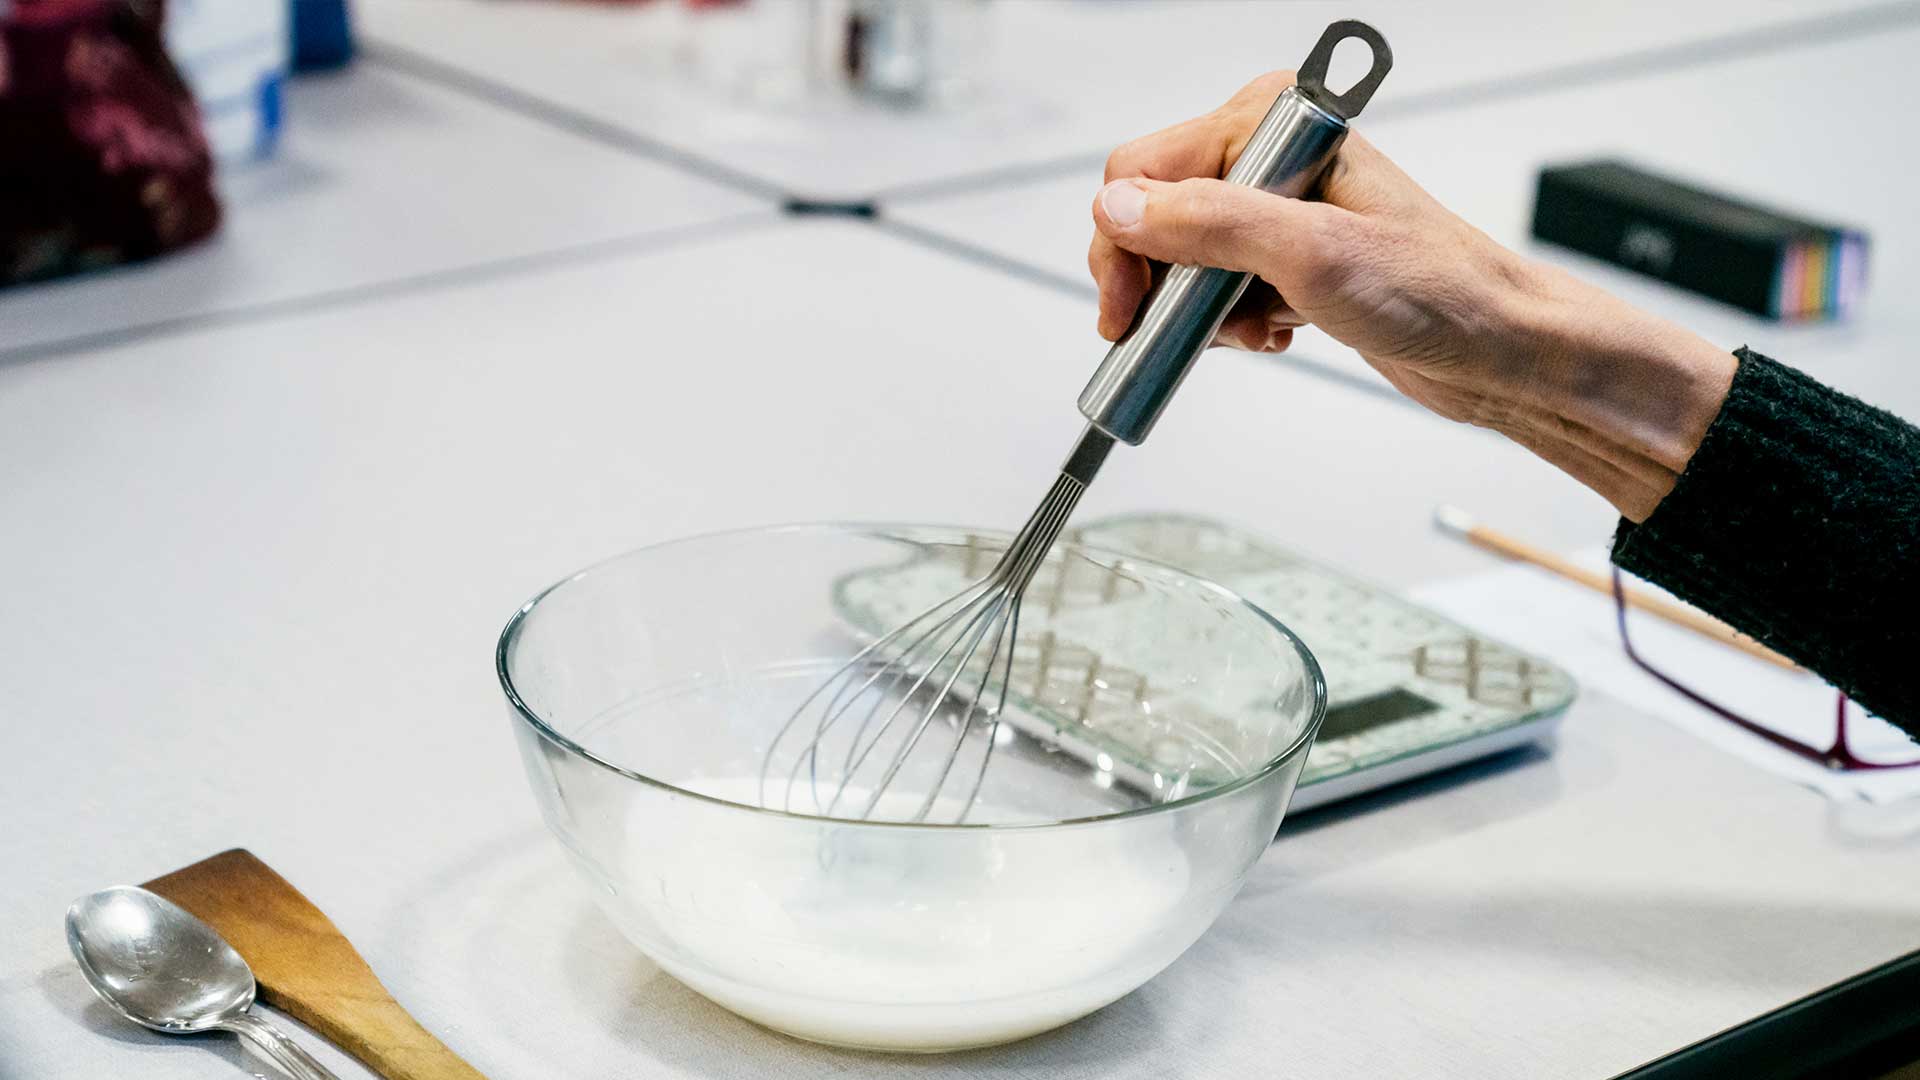 Objectif zéro déchet des dizaines d’ateliers pour fabriquer ses propres produits ménagers - de la chimie abordable mais une méthode à suivre avec soin